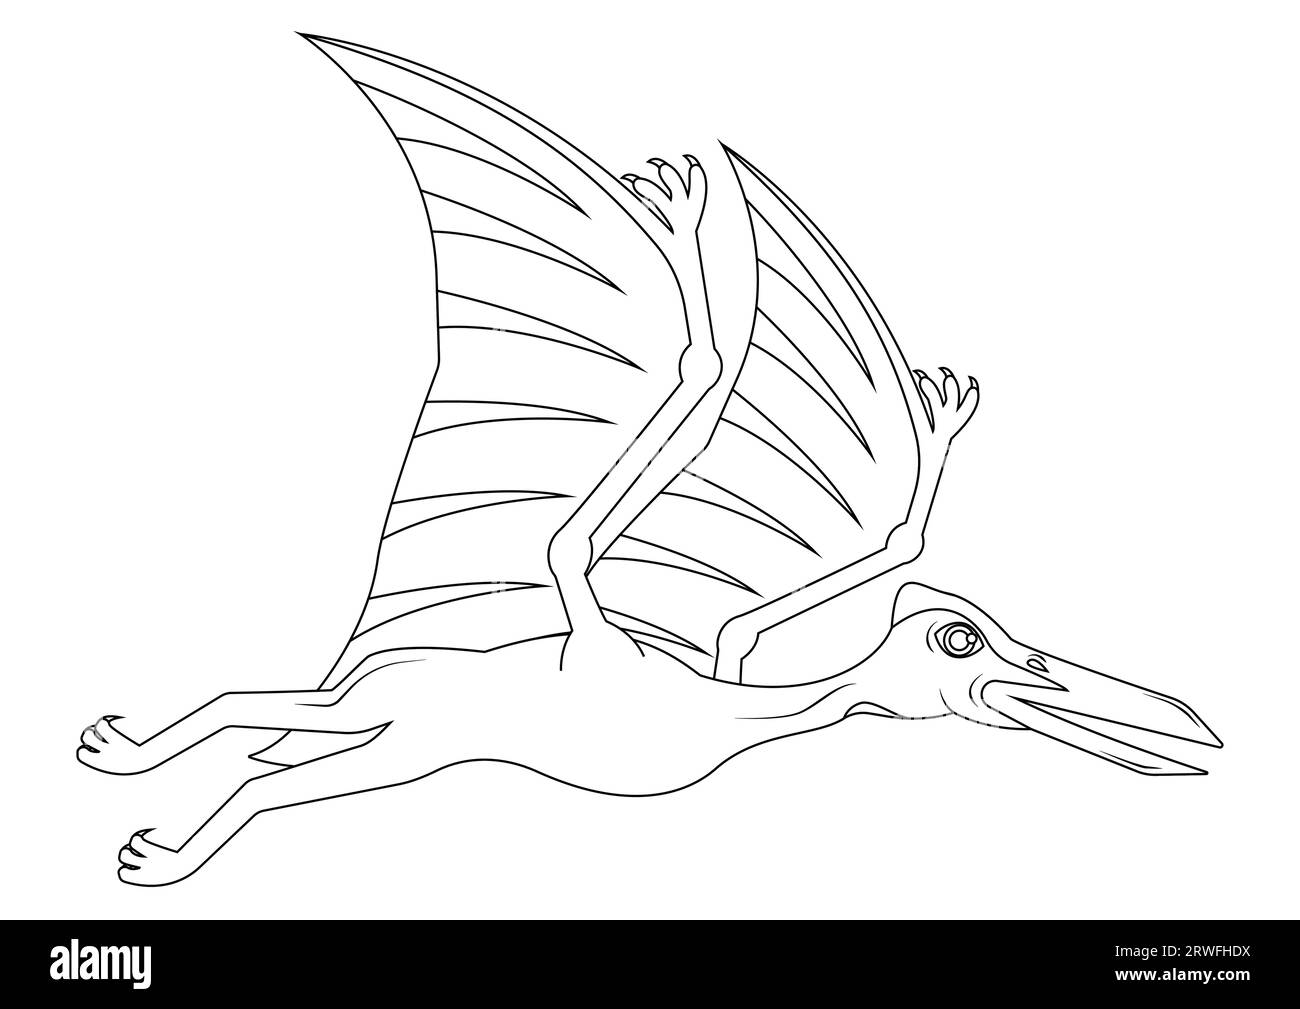 Noir et blanc Quetzalcoatlus Dinosaur Cartoon Character Vector. Coloriage d'un dinosaure Quetzalcoatlus Illustration de Vecteur